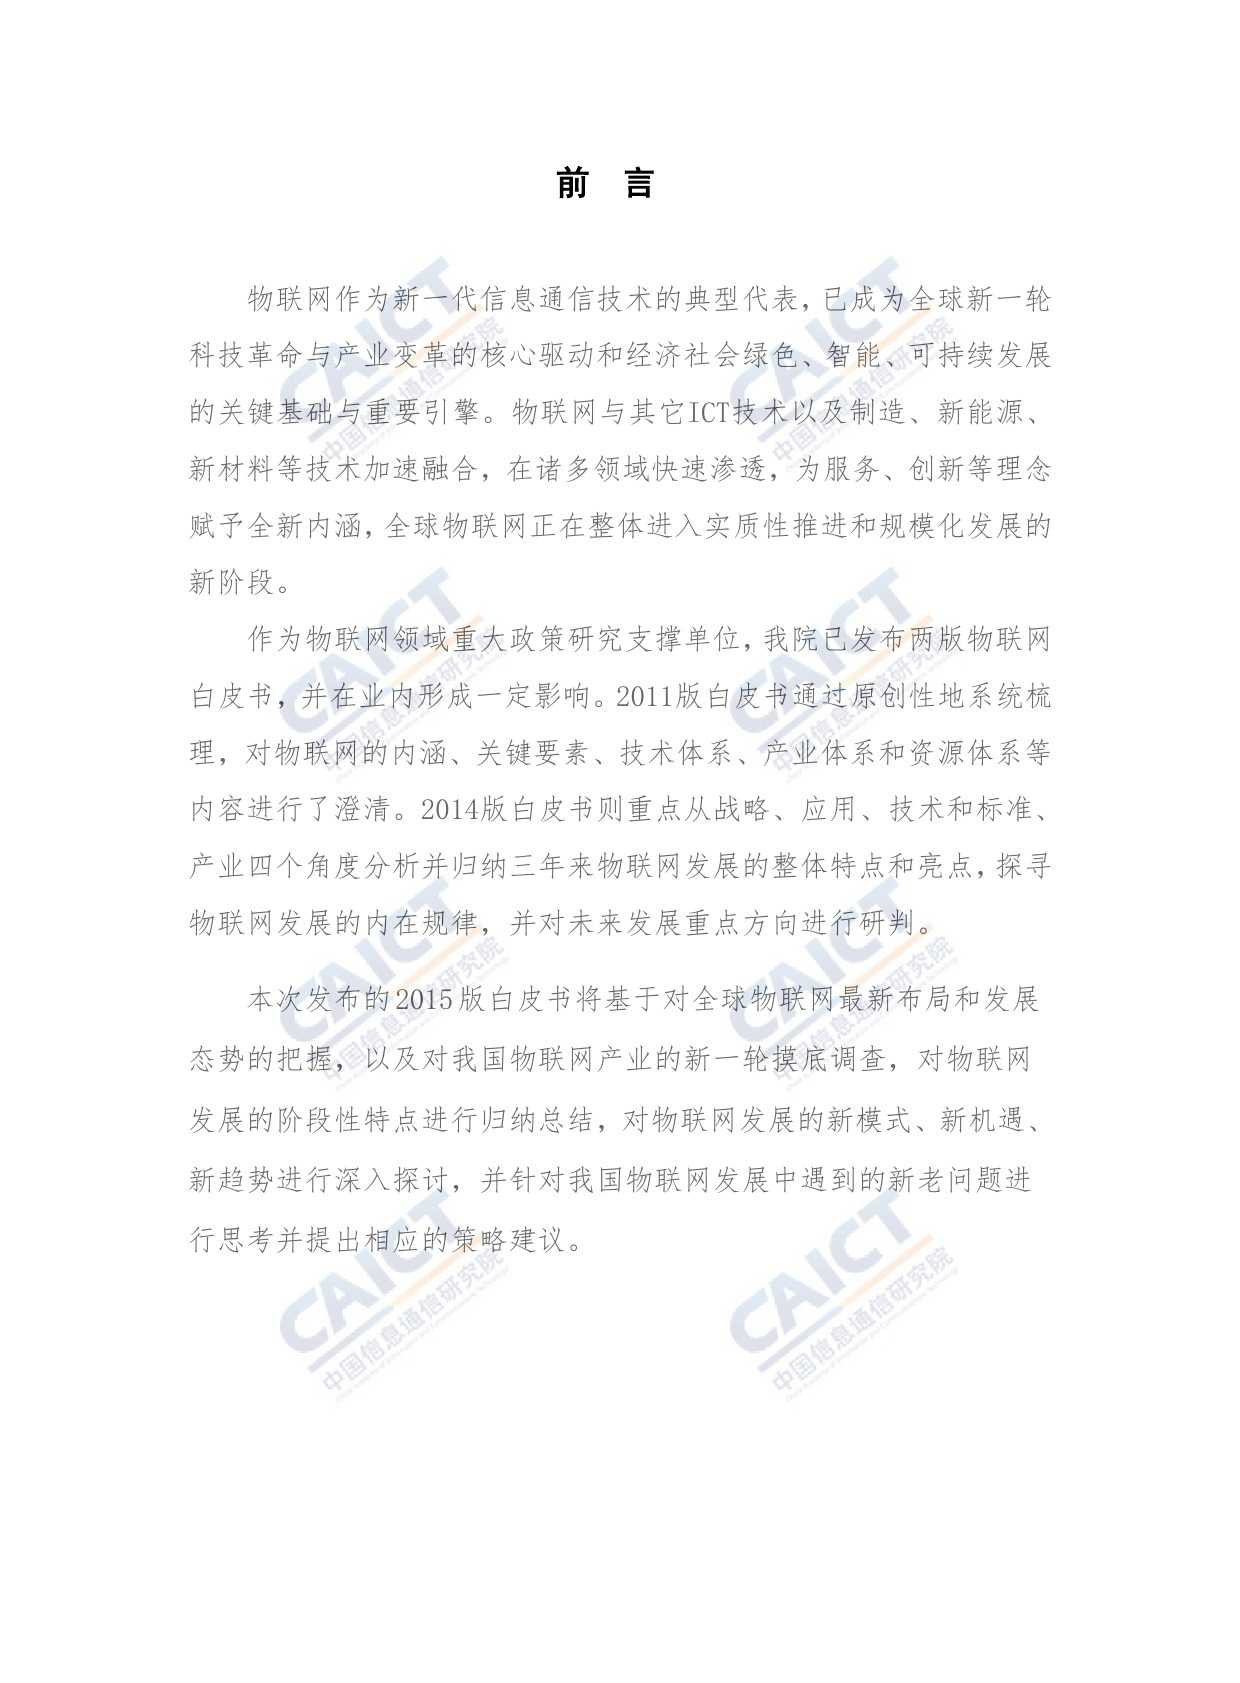 中国信息通信研究院：2015年物联网白皮书_000003